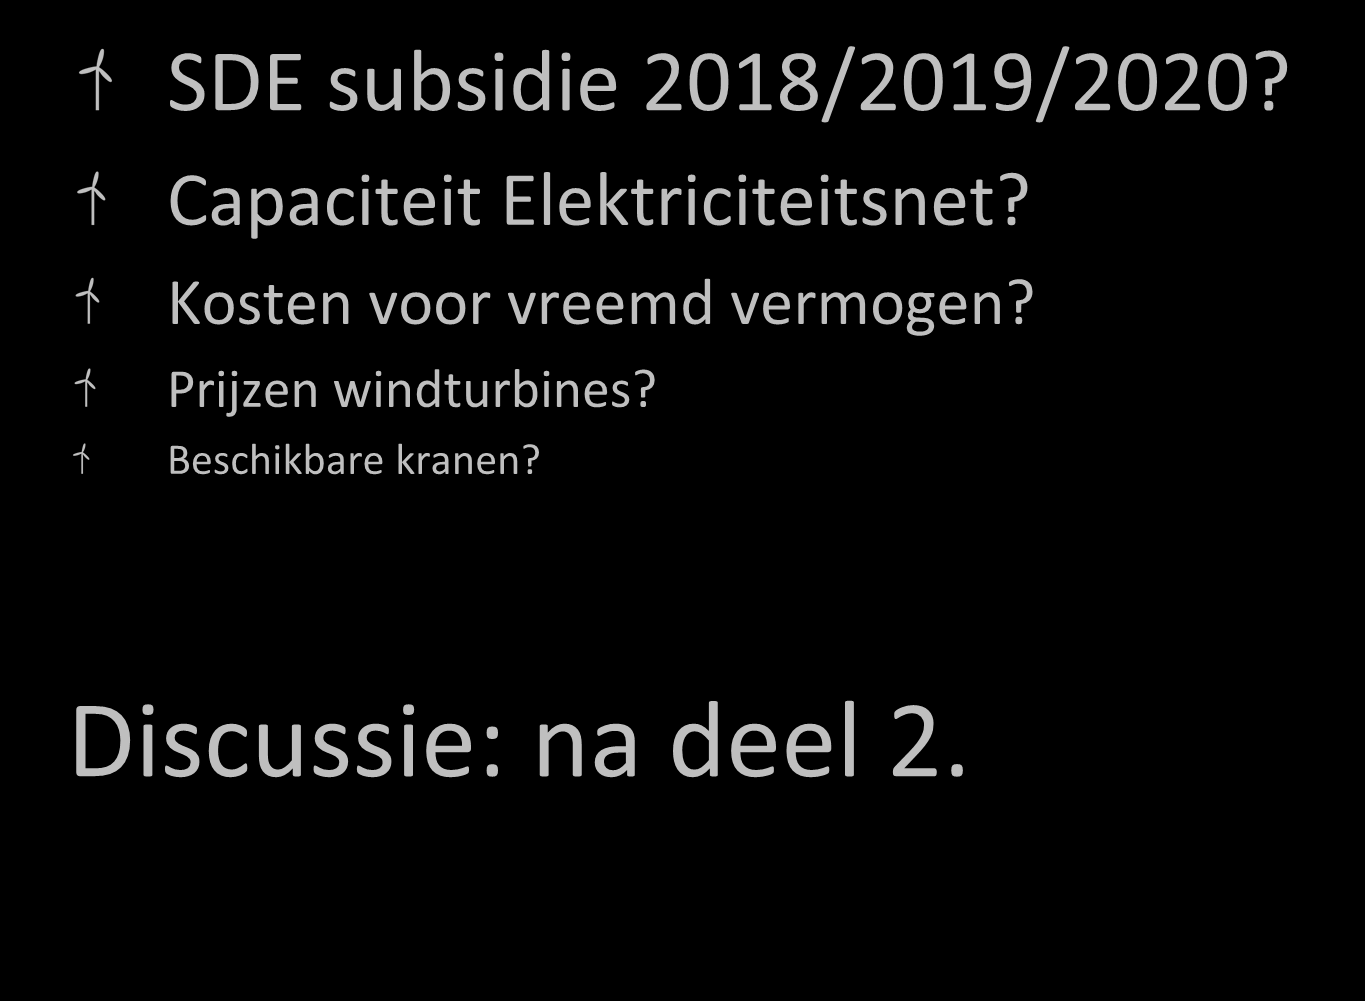 Bottlenecks? SDE subsidie 2018/2019/2020? Capaciteit Elektriciteitsnet?